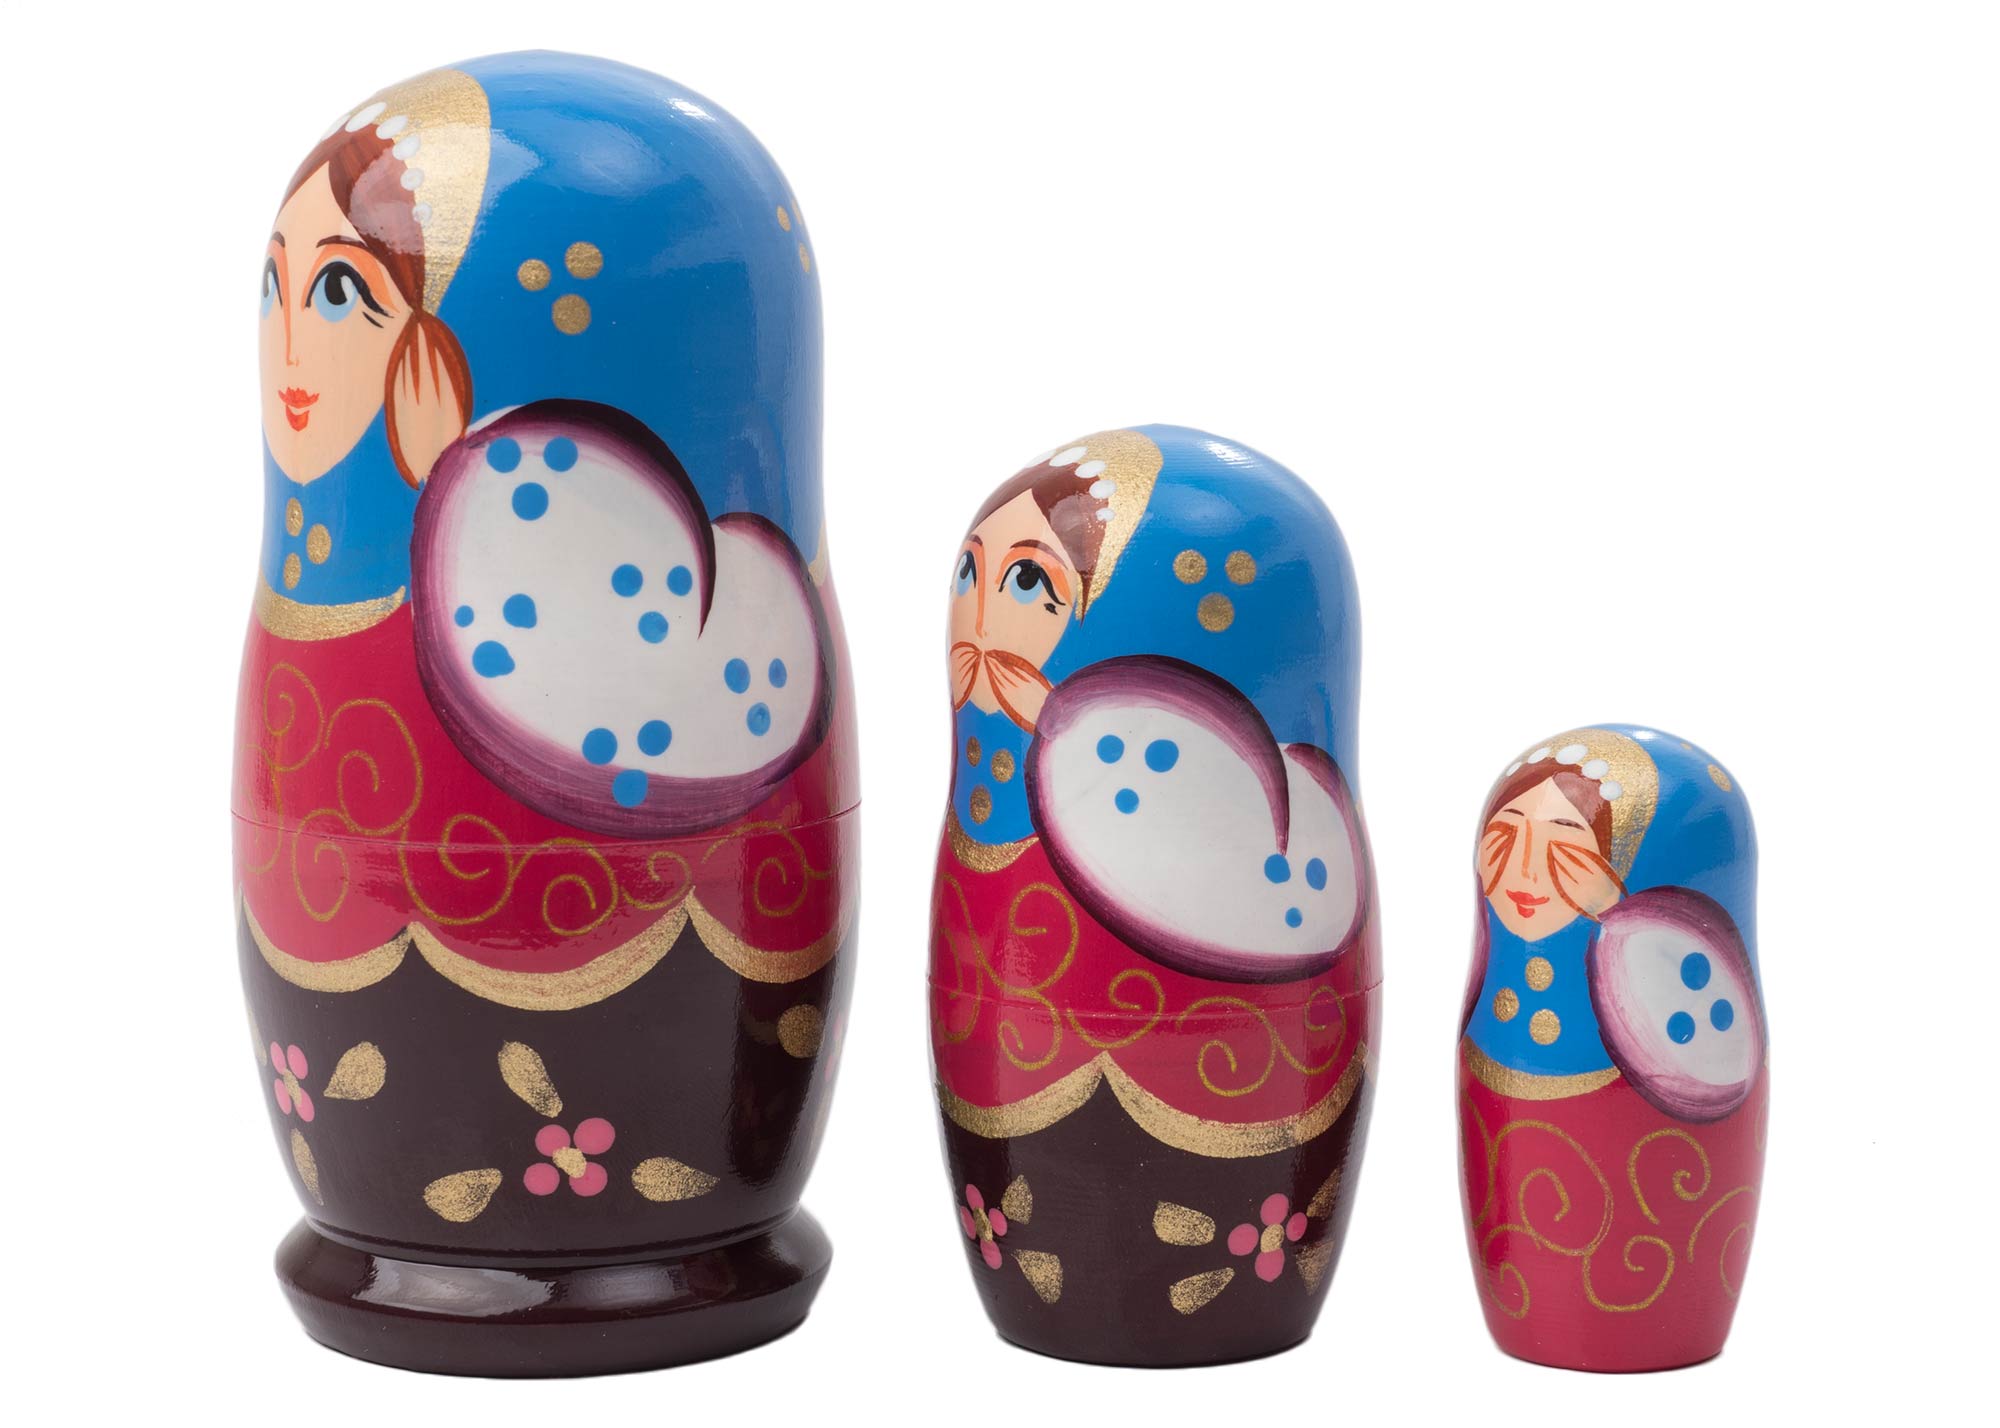 Buy Hear No Evil Matryoshka 3pc./4" – Inexpensive Russian Matryoshka Doll at GoldenCockerel.com